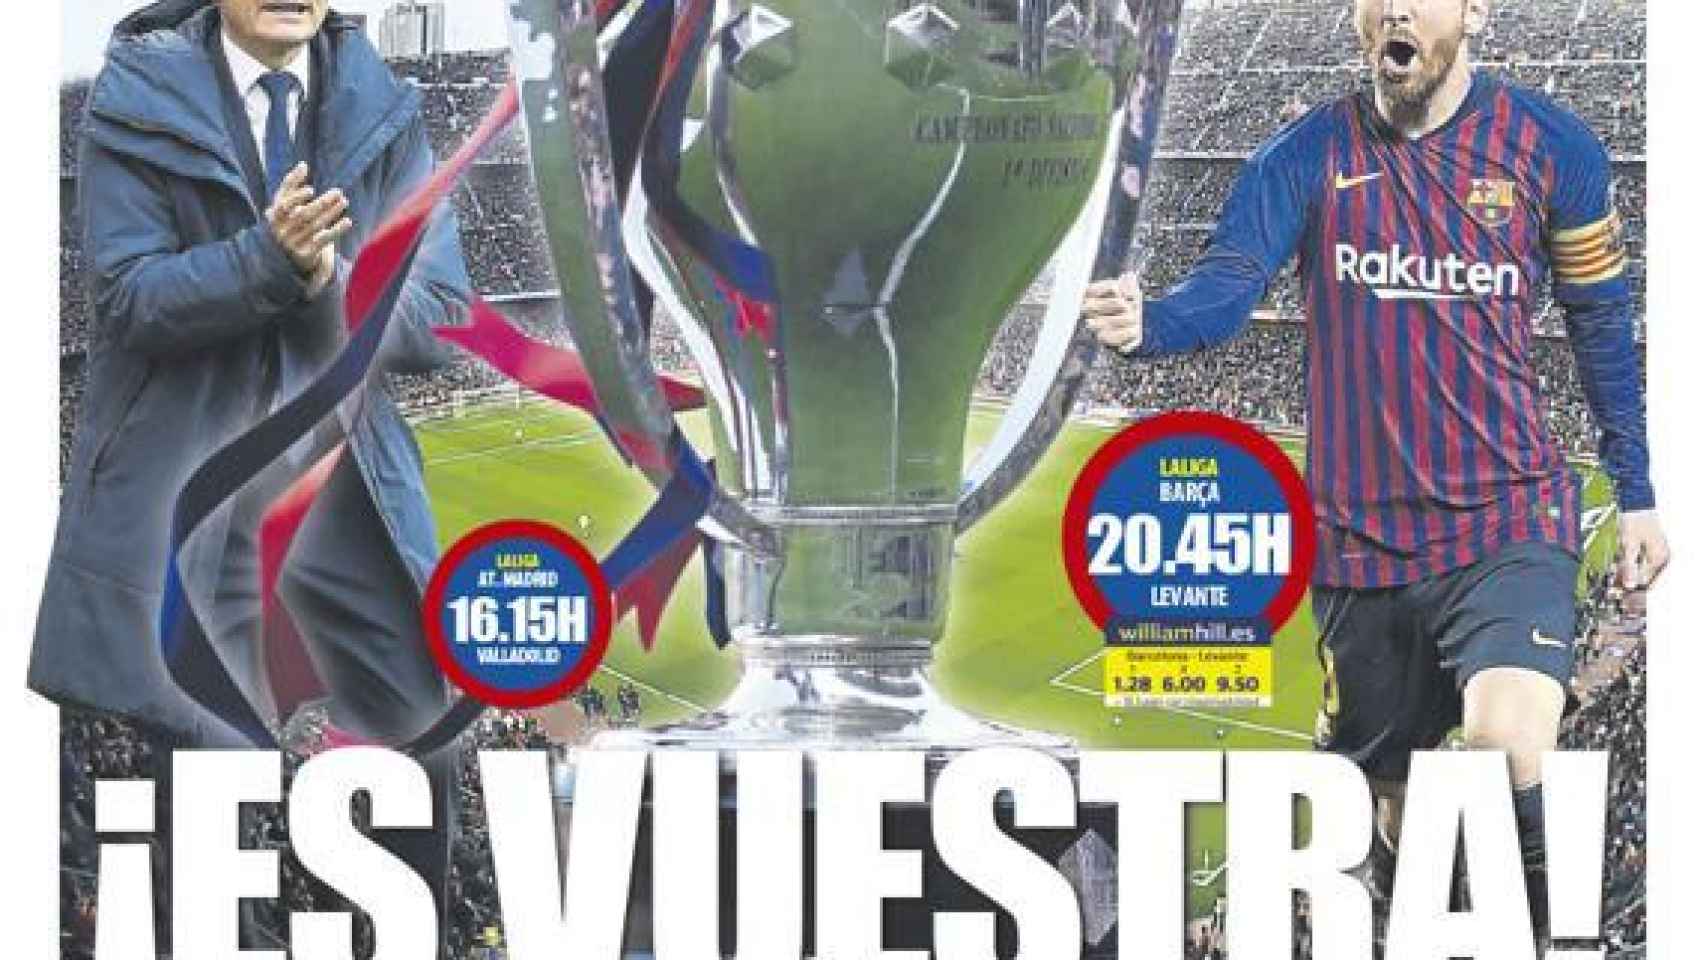 La portada del diario Mundo Deportivo (27/04/2019)